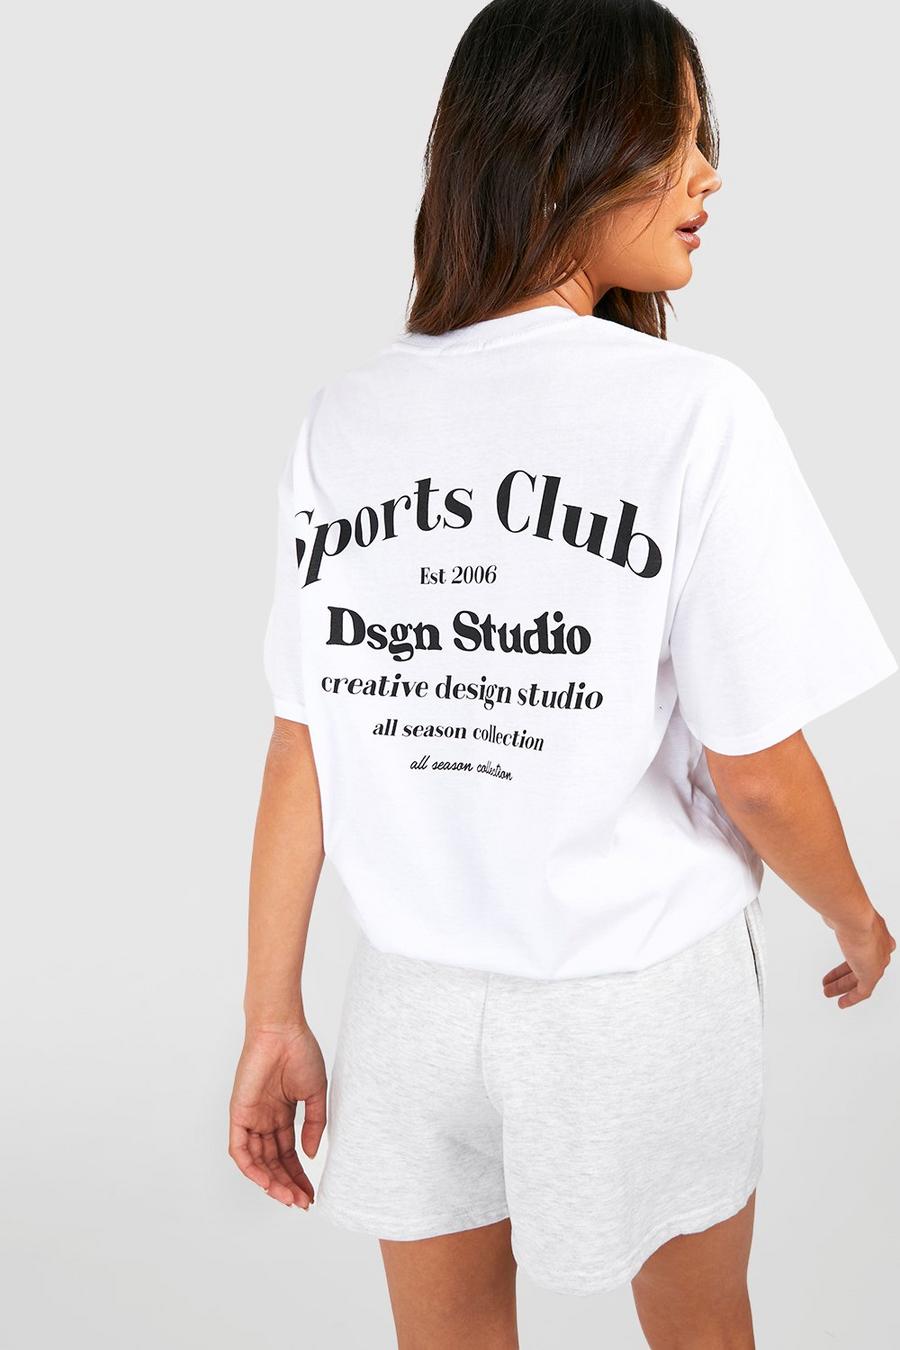 boohoo Dsgn Studio Sports Gym T-Shirt - White - Size L